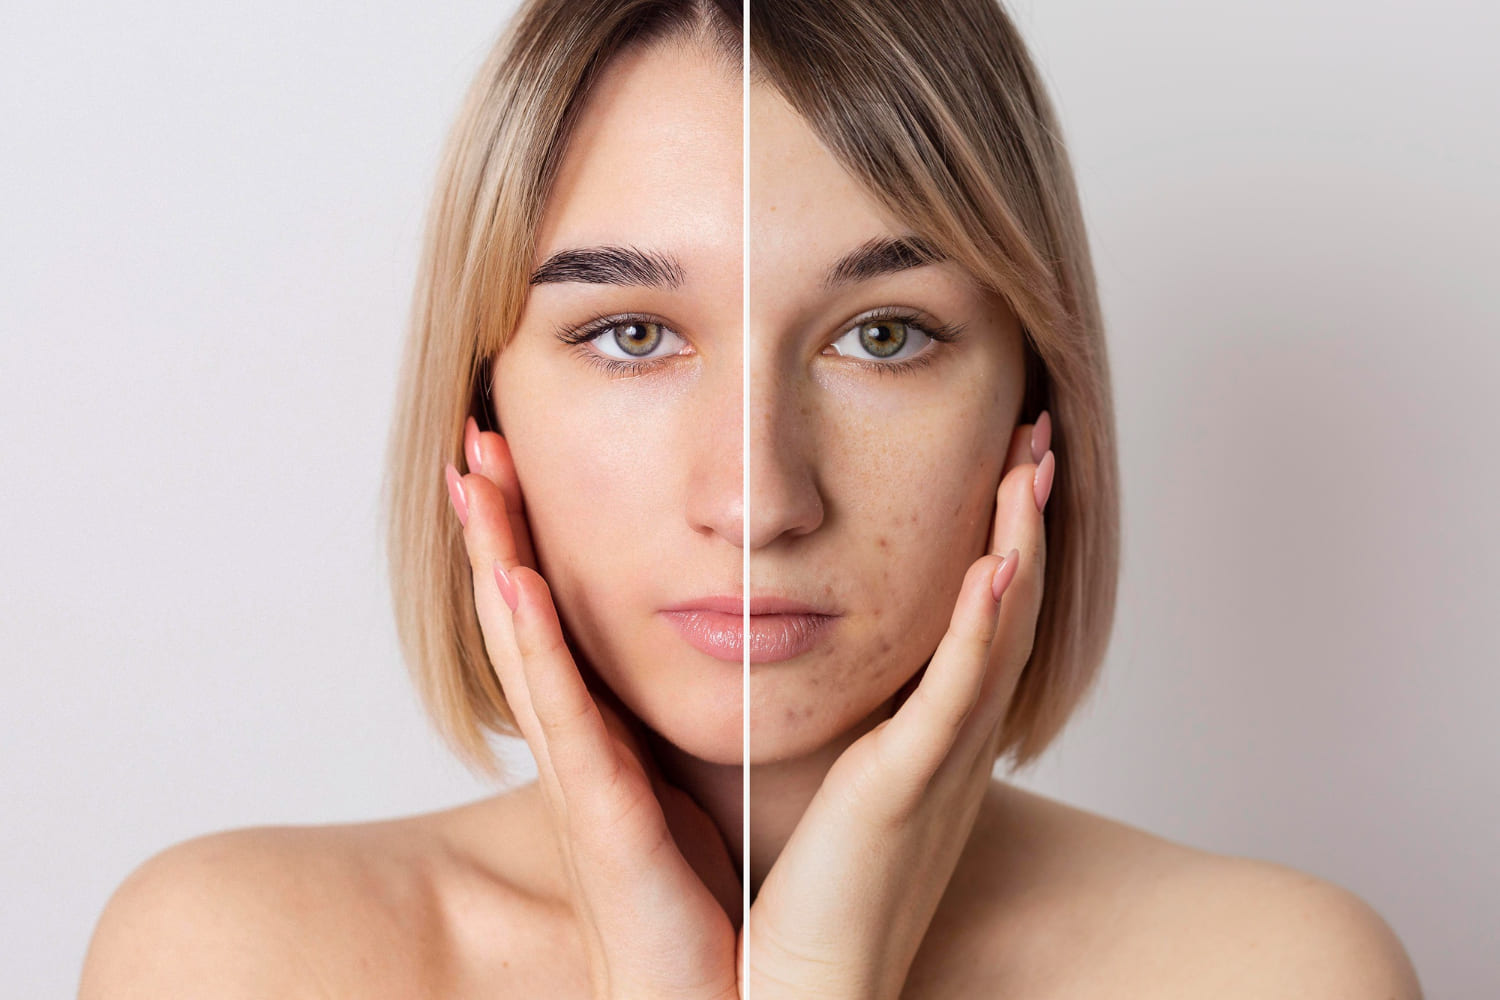 Imagem antes e depois de mulher após procedimento de peeling facial